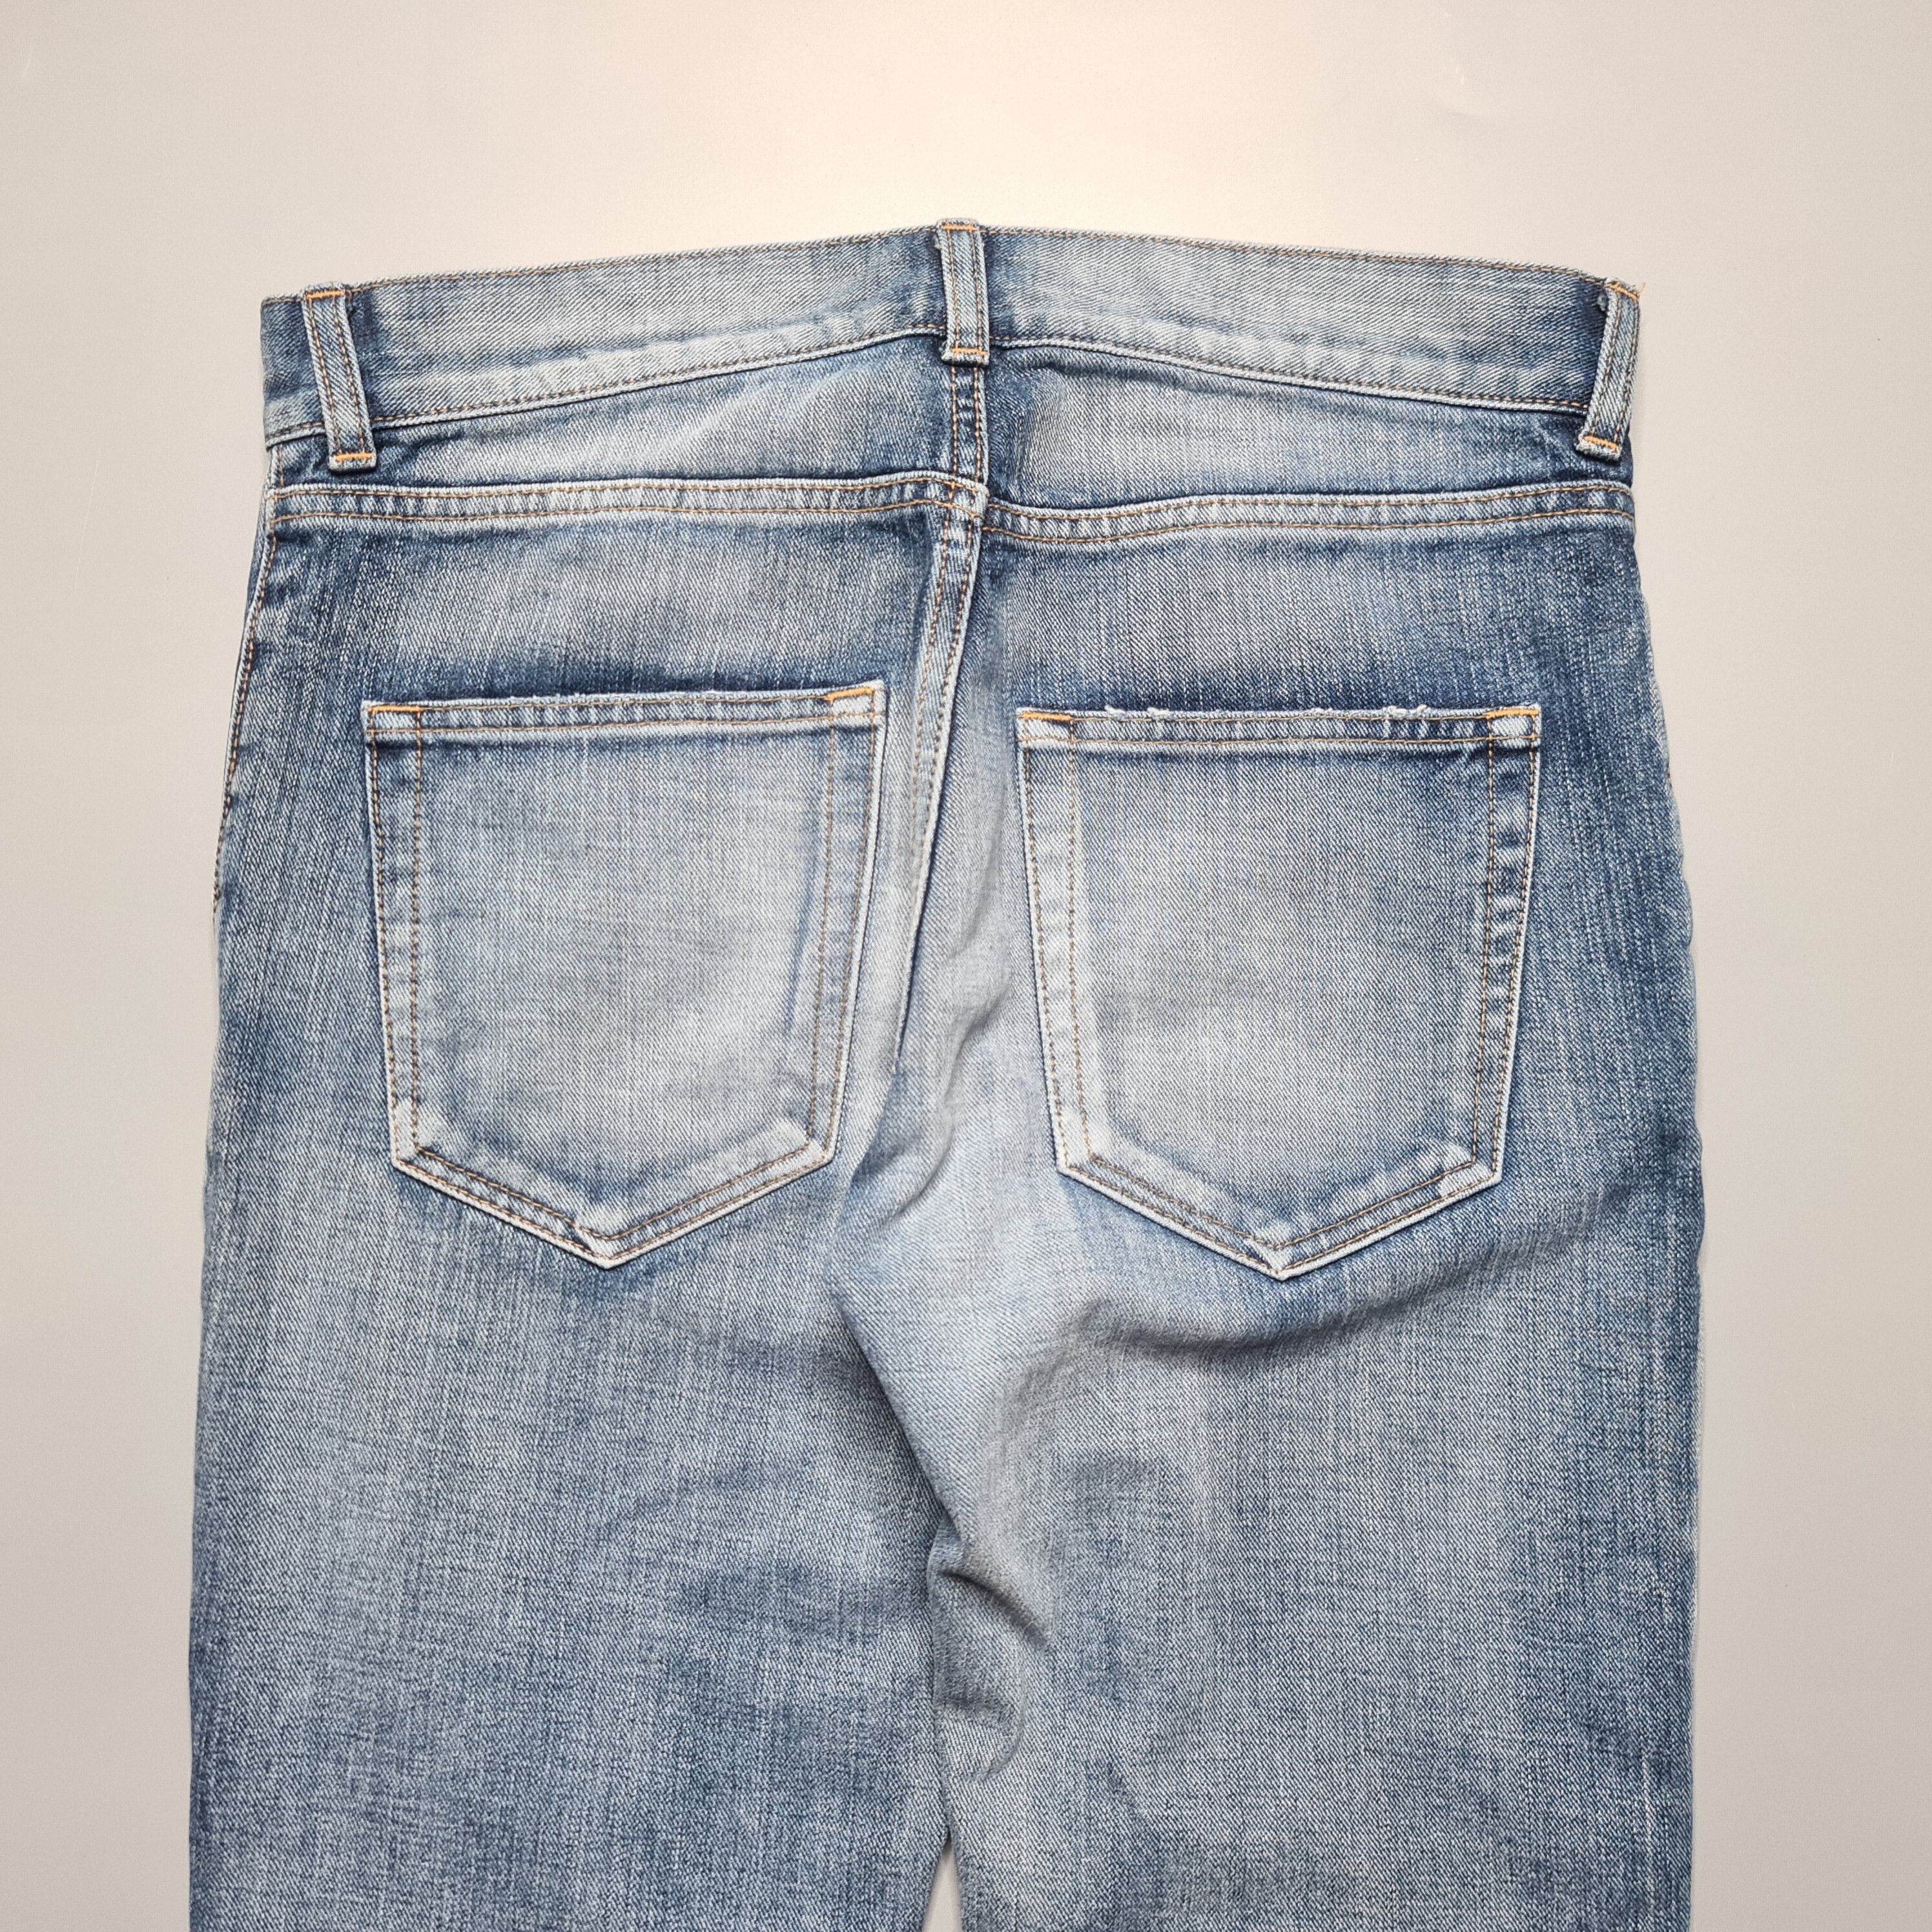 Saint Laurent Paris - AW17 D02 Blue Washed Skinny Jeans - 4